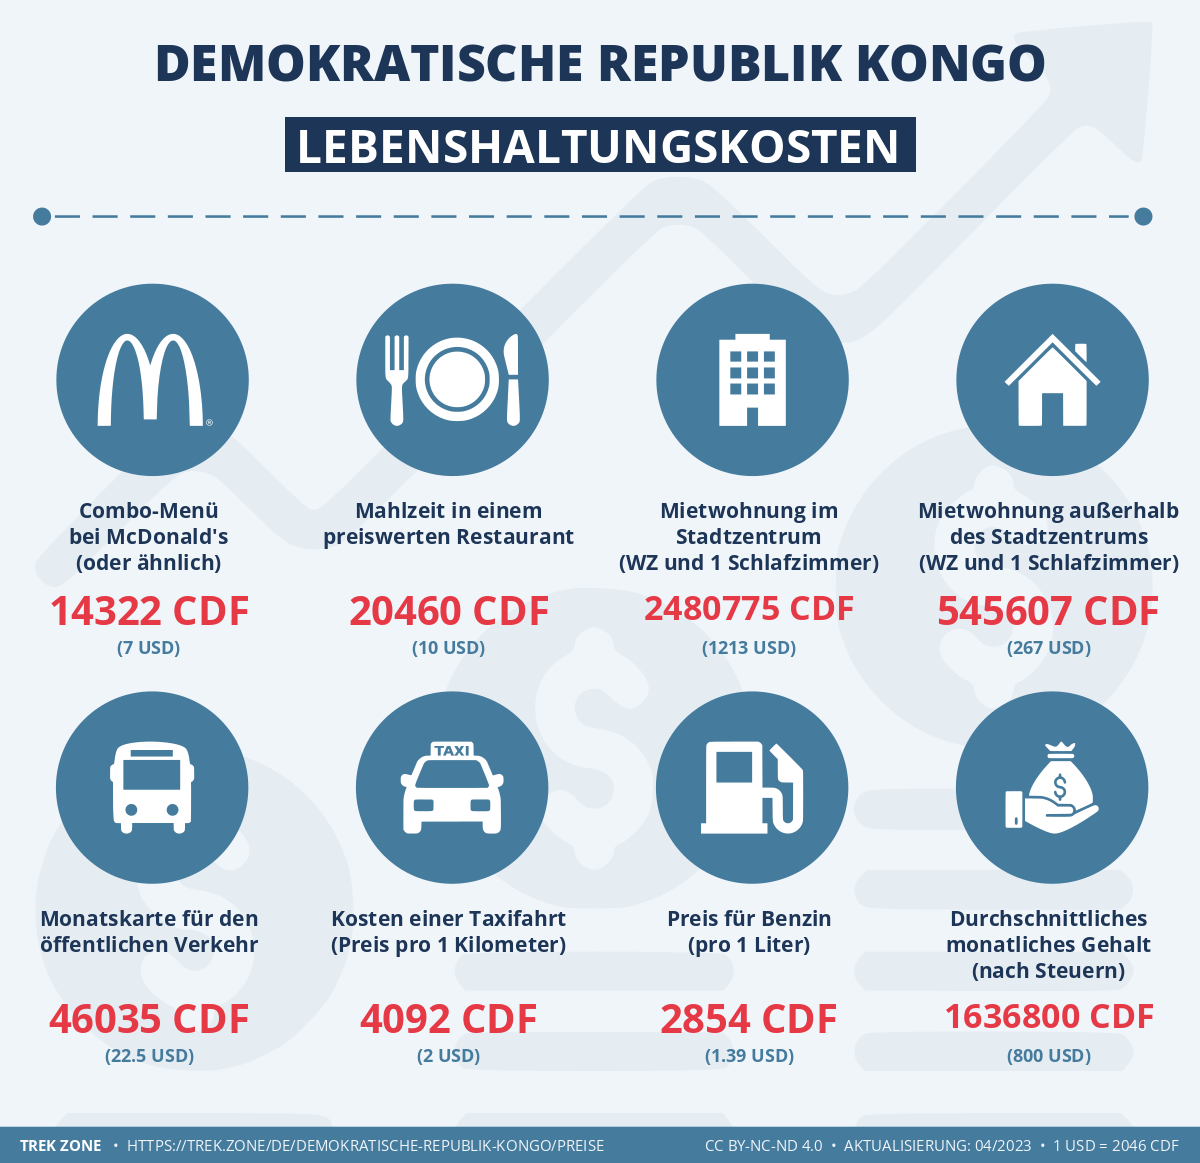 preise und lebenskosten demokratische republik kongo